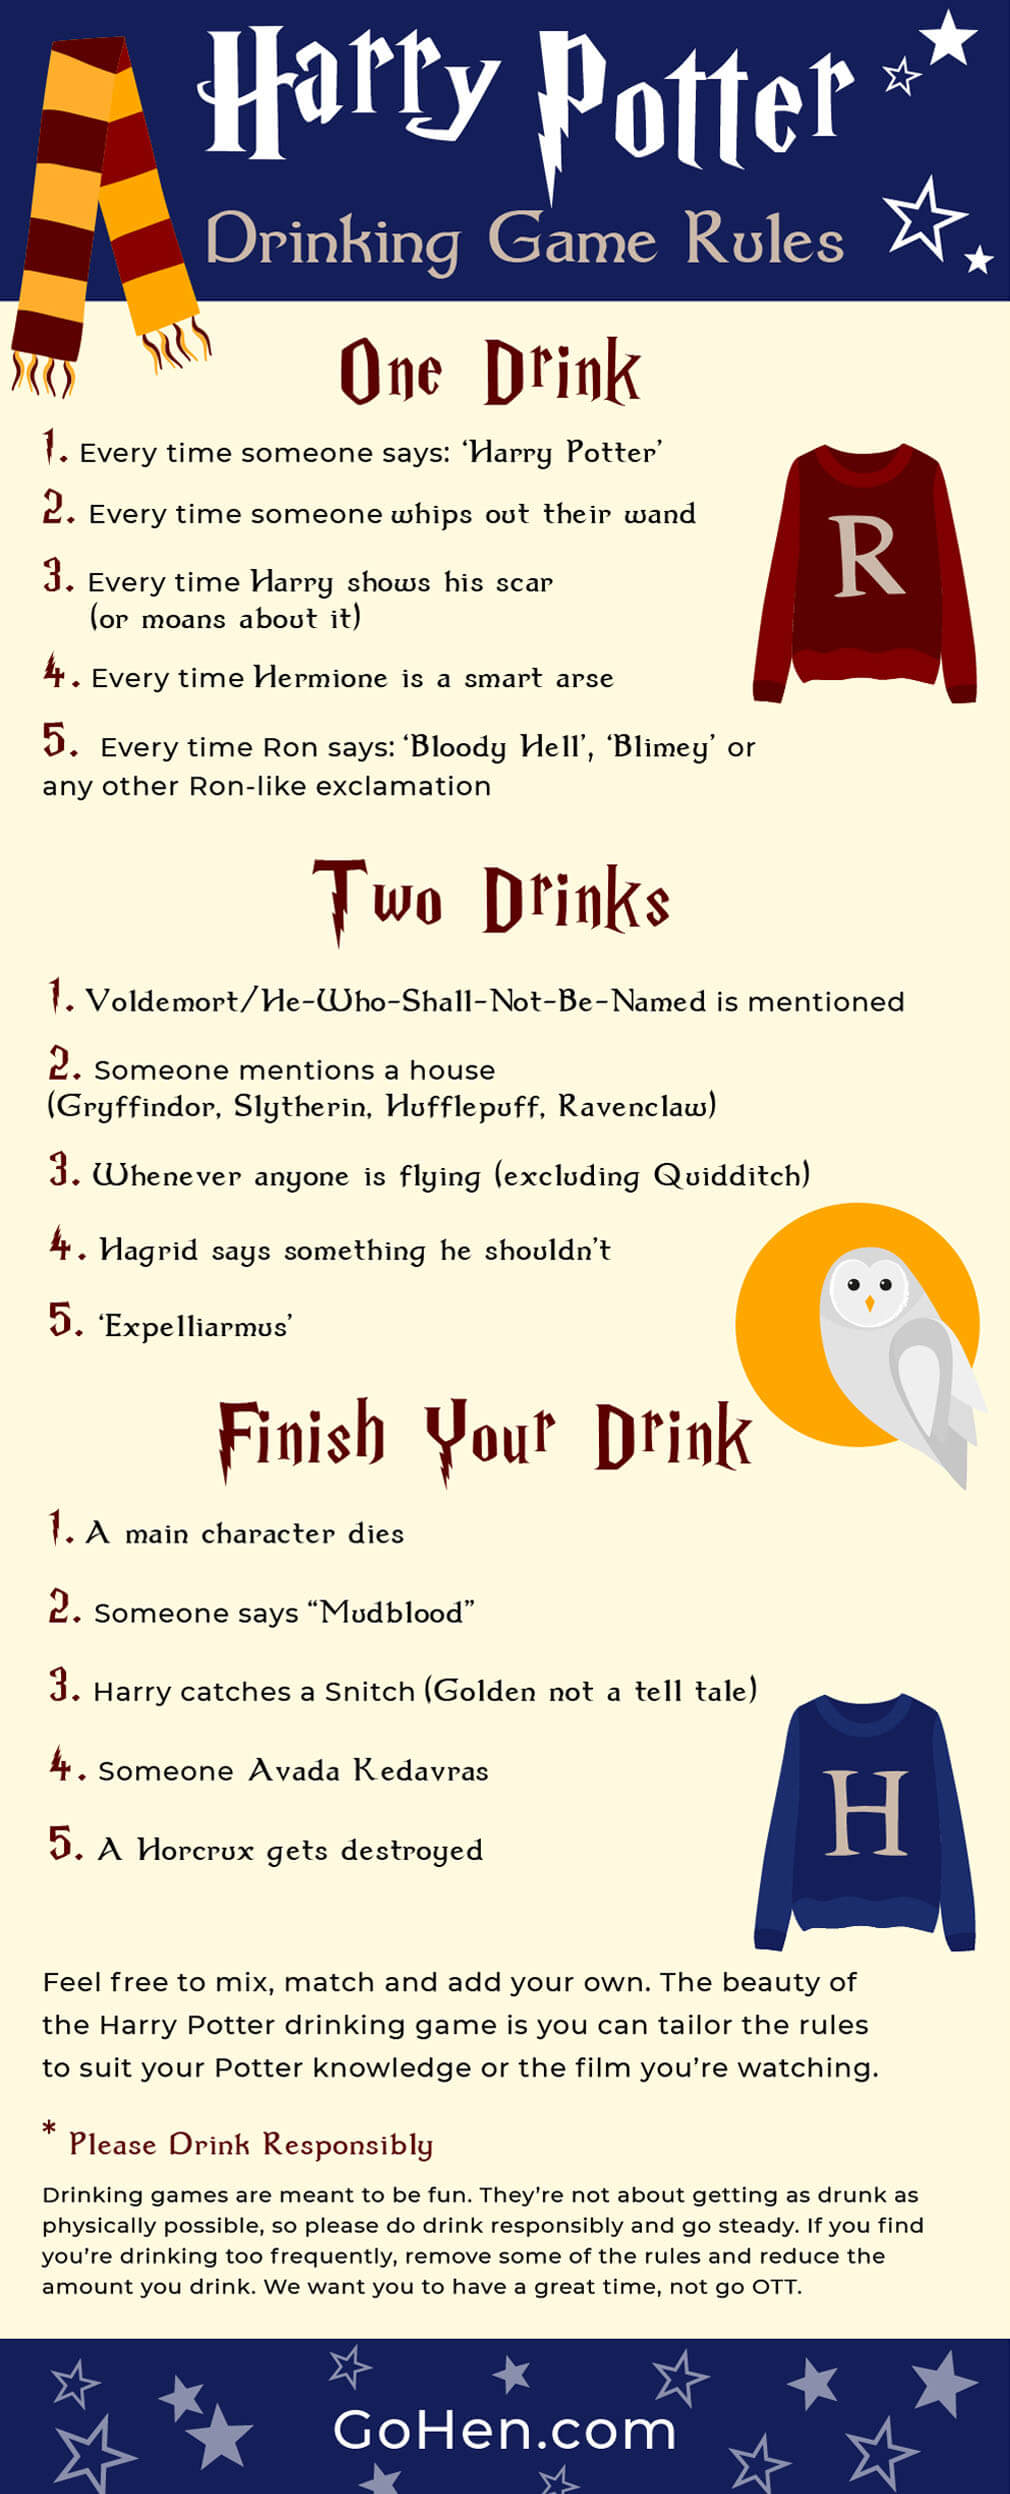 哈利波特饮酒游戏规则 - 电影饮酒游戏